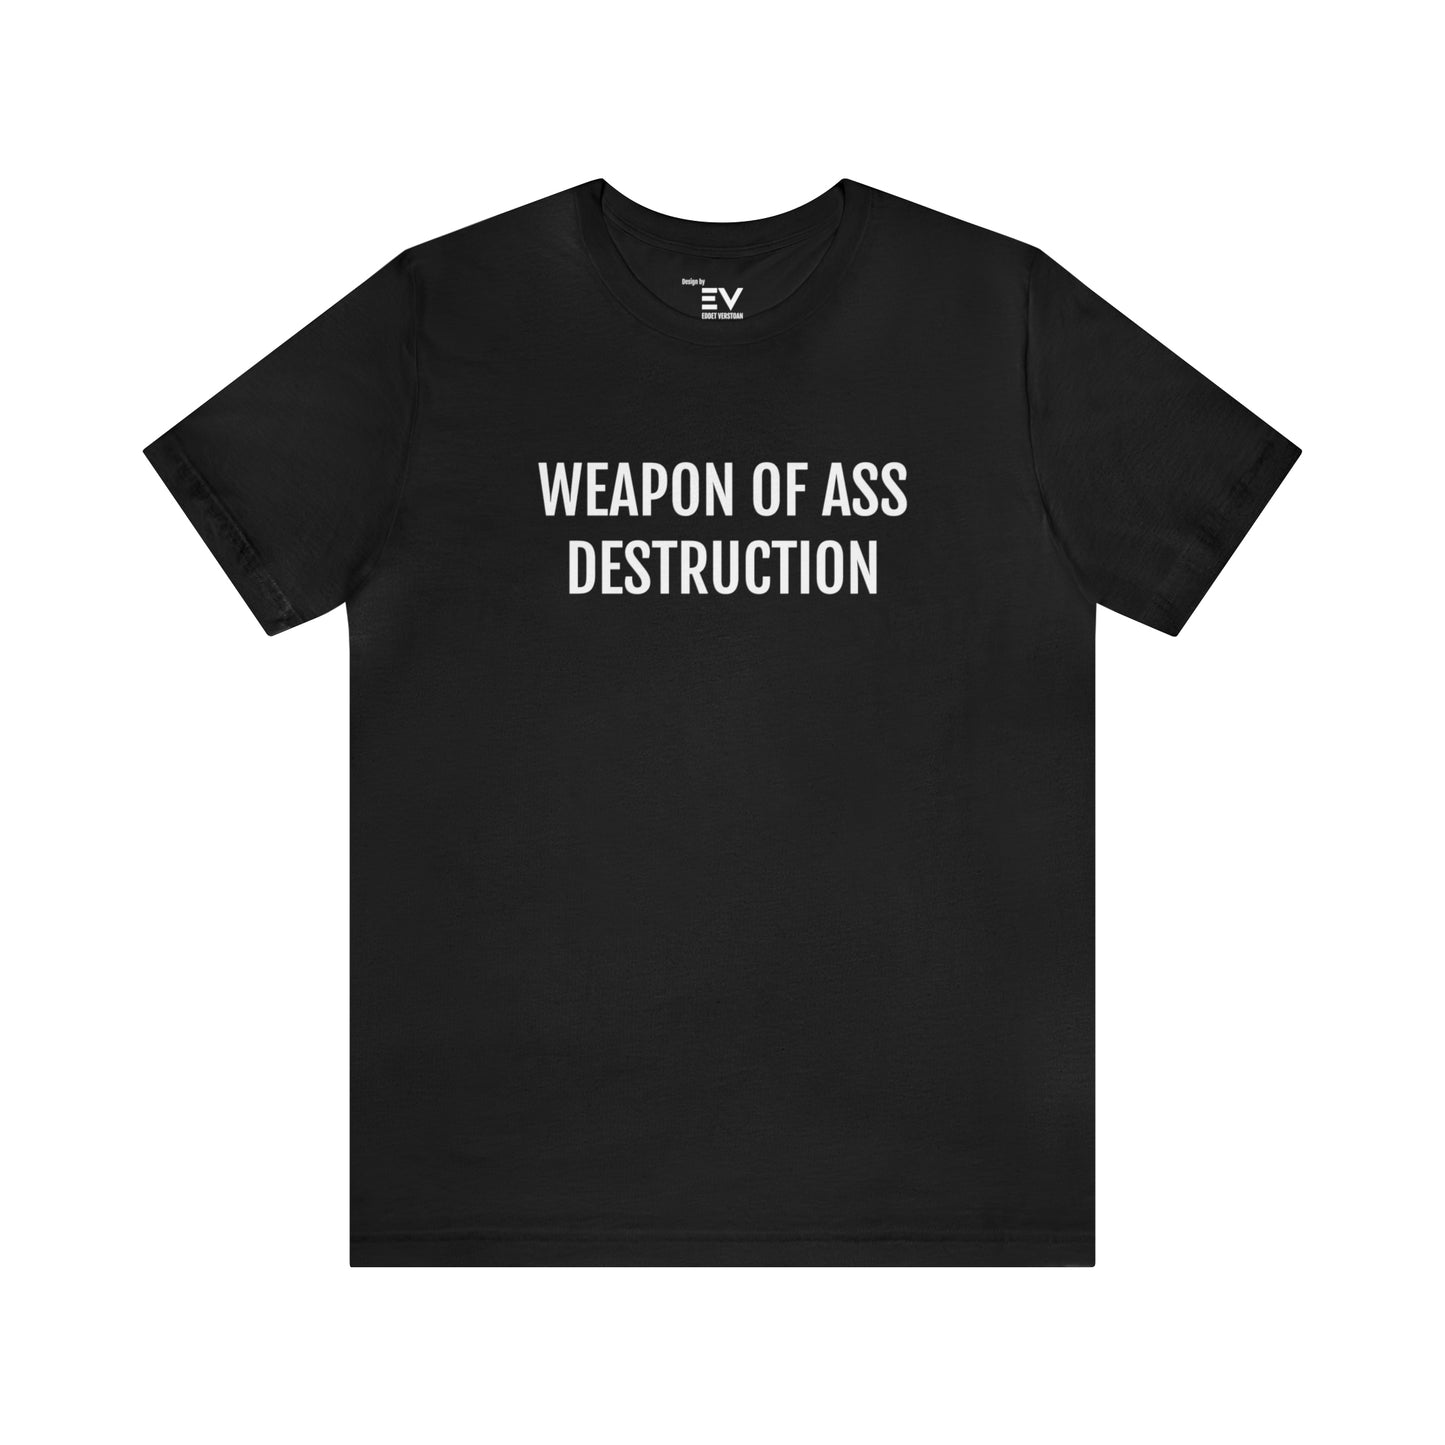 Opvallend Zwart T-shirt met Hilarische Woordspeling